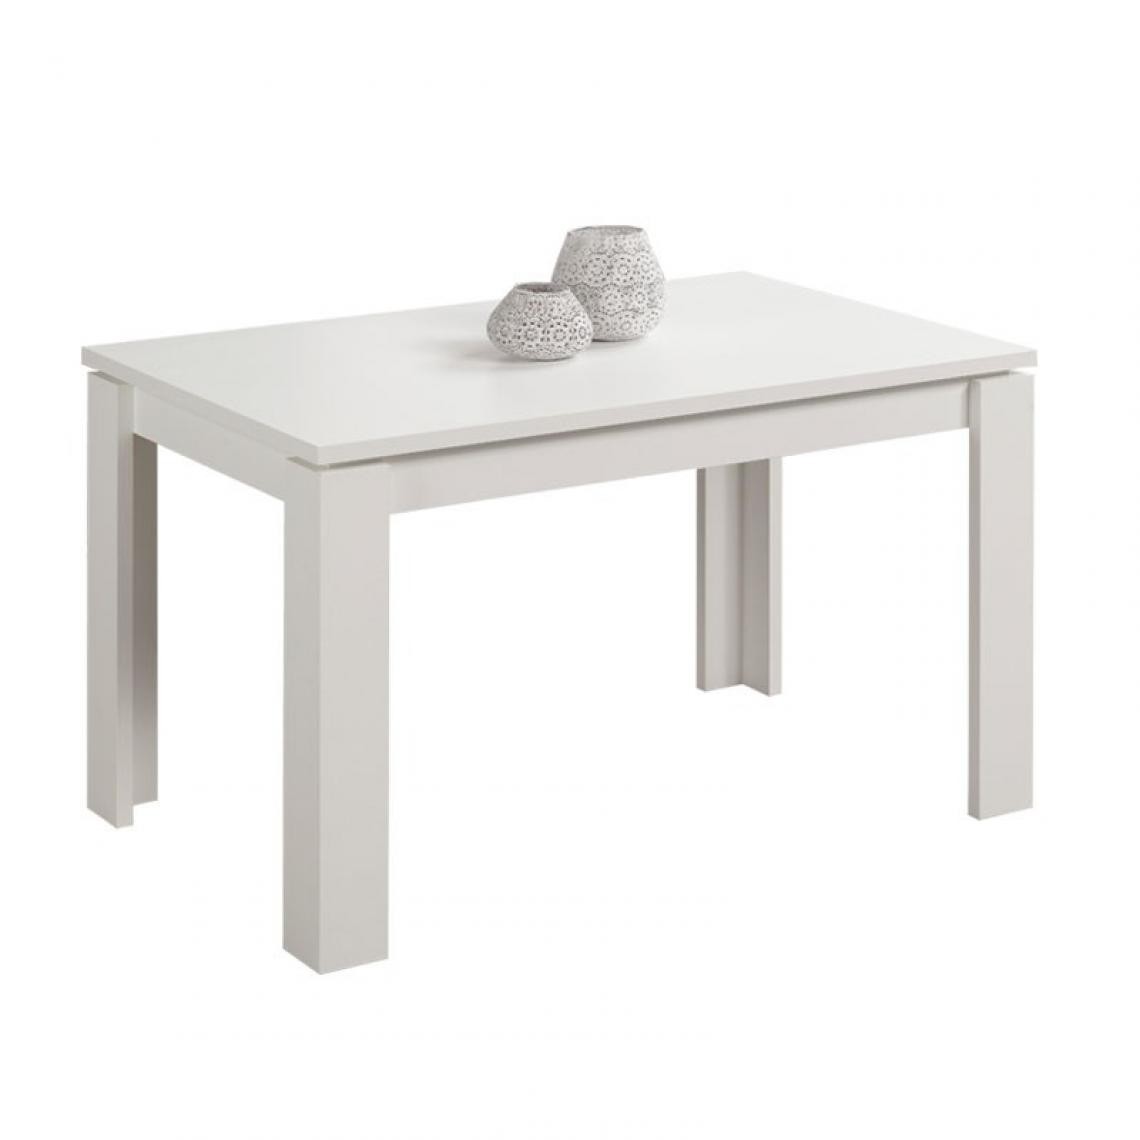 Webmarketpoint - Table extensible en bois mélaminé mélèze blanc 120x80xh 76 cm - Tables à manger